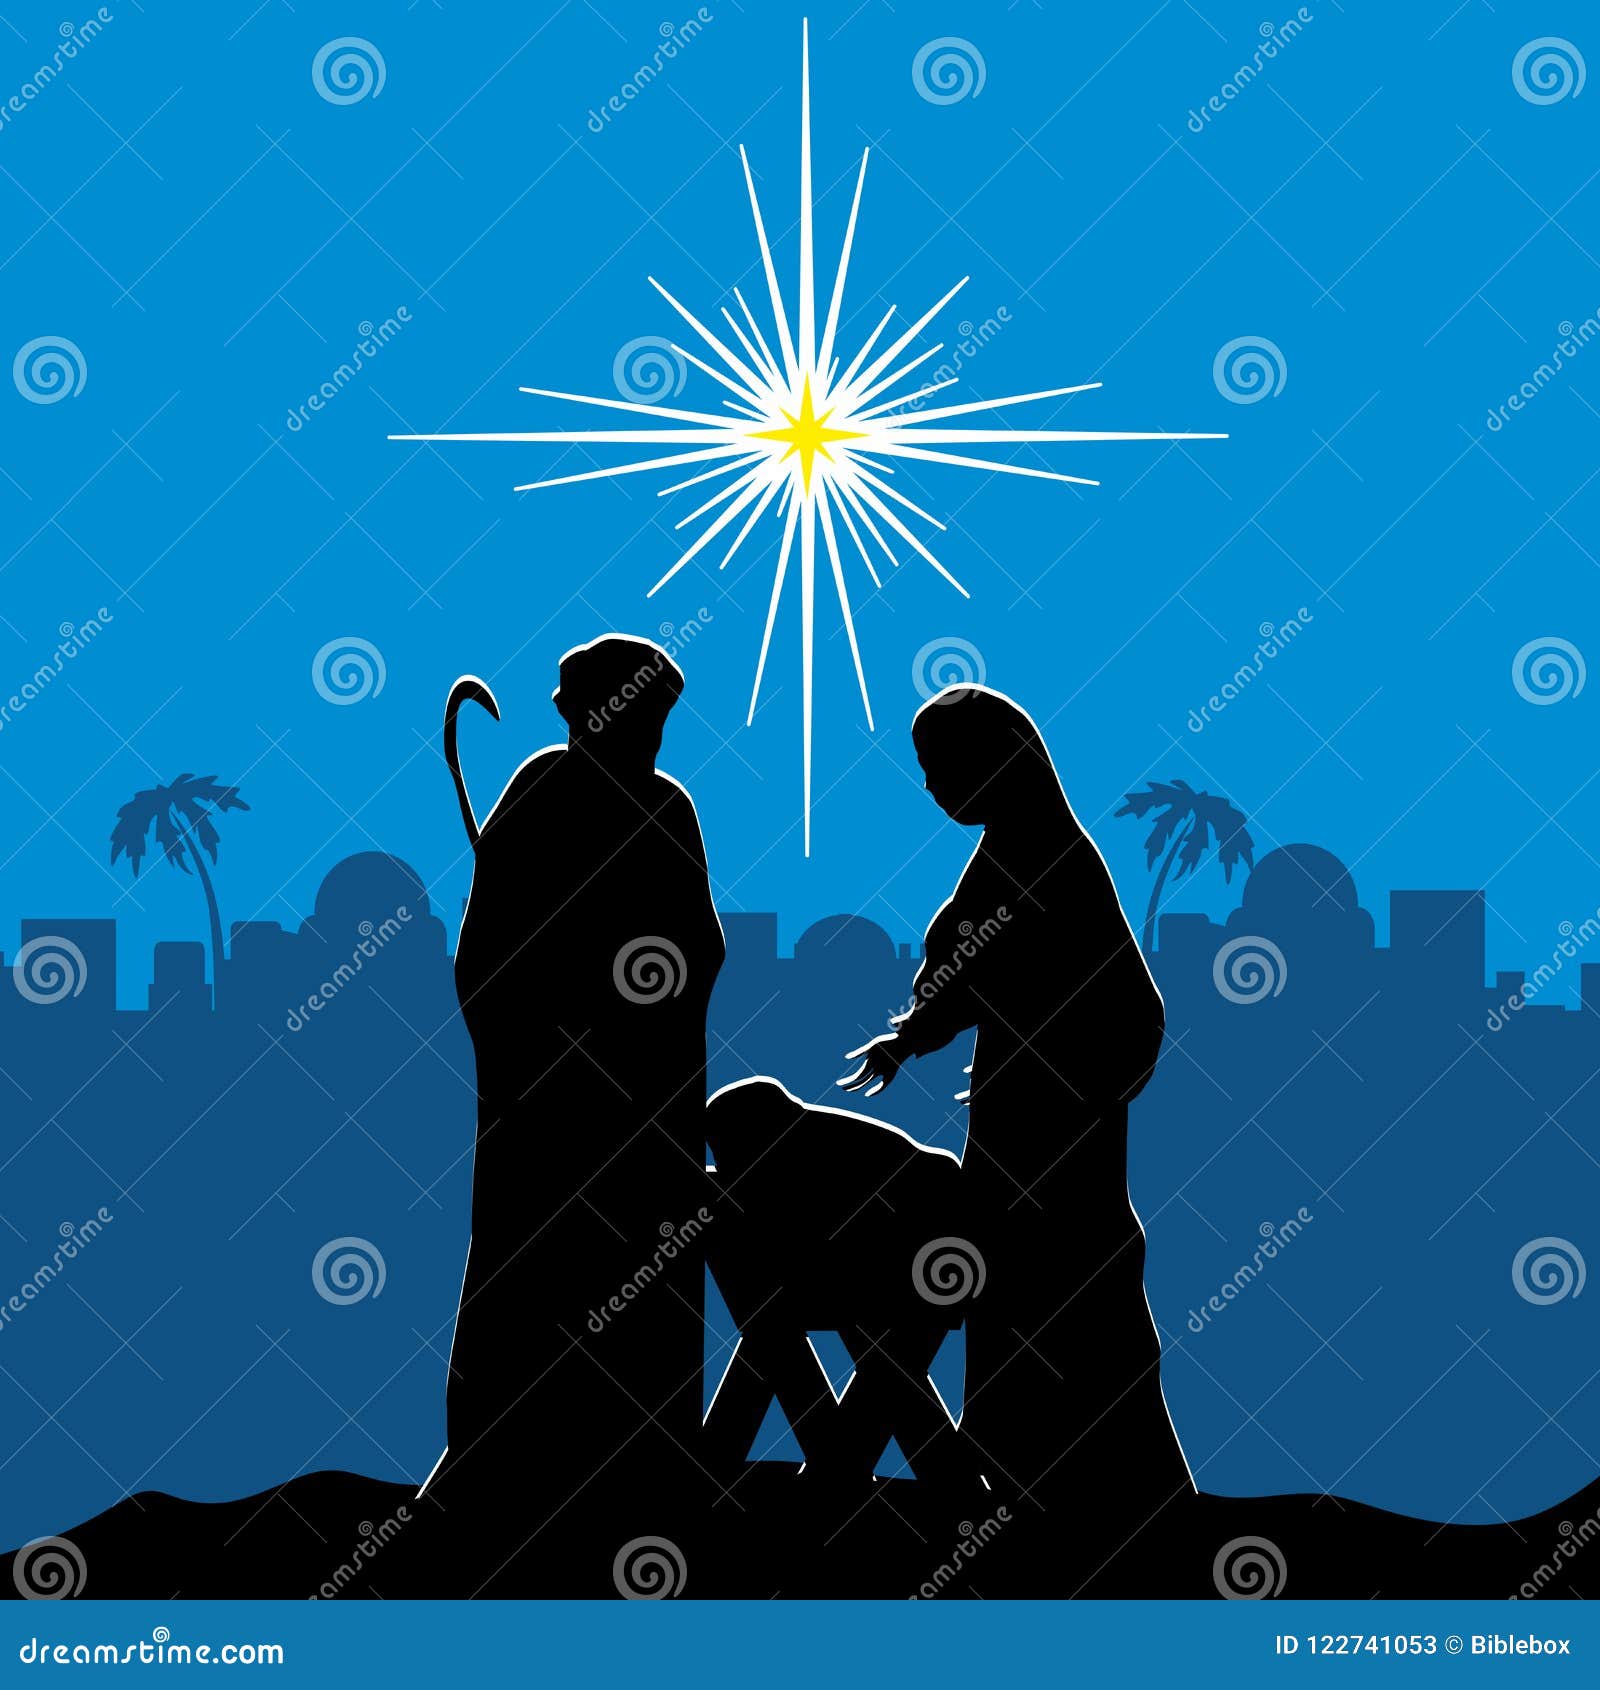 Immagini Natale Nativita.Scena Di Nativita Buon Natale Illustrazione Vettoriale Illustrazione Di Uomini Mary 122741053